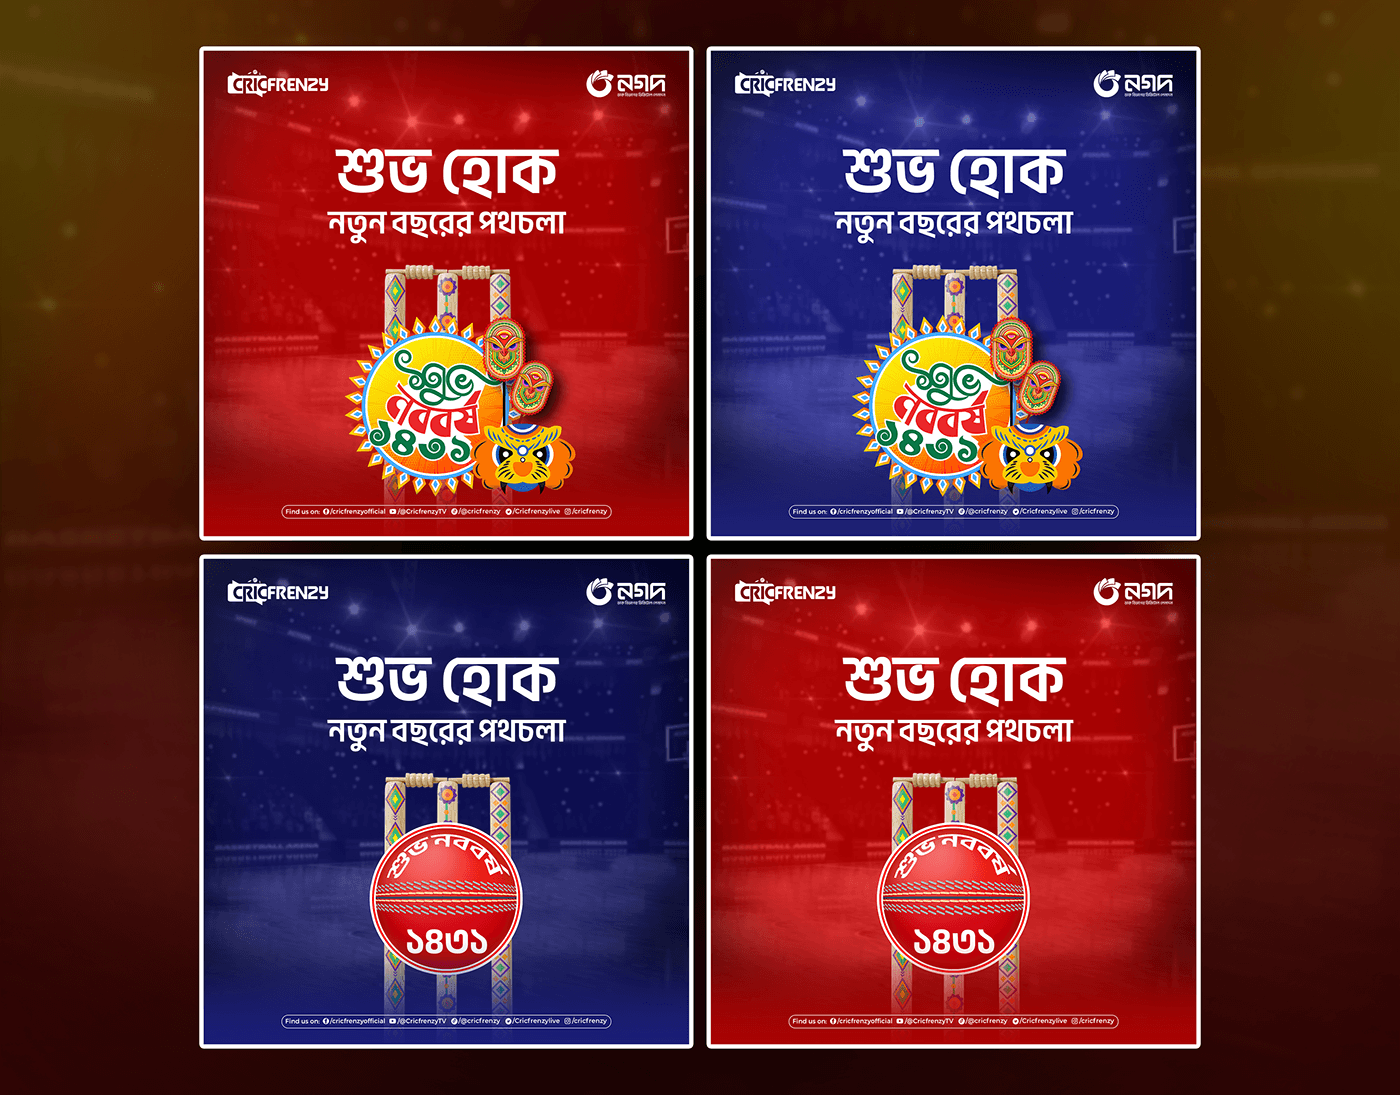 পহেলা বৈশাখ Pohela Boishakh قصة الموكا Bengali New Year boishakh 메이저사이트 Bangla festival Poster Design Social media post